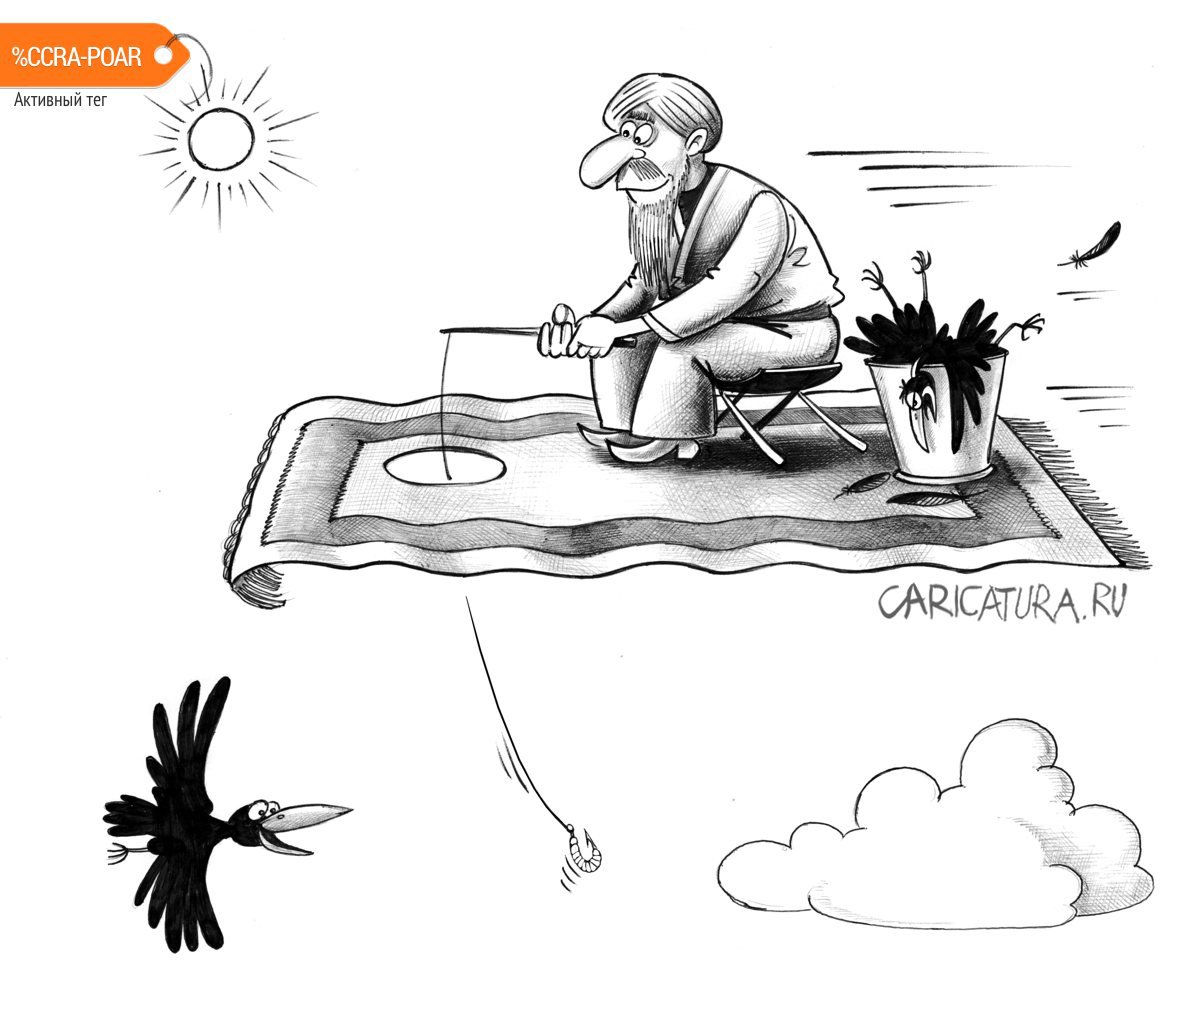 Карикатура «Рыбак», Сергей Корсун. В своей авторской подборке ...